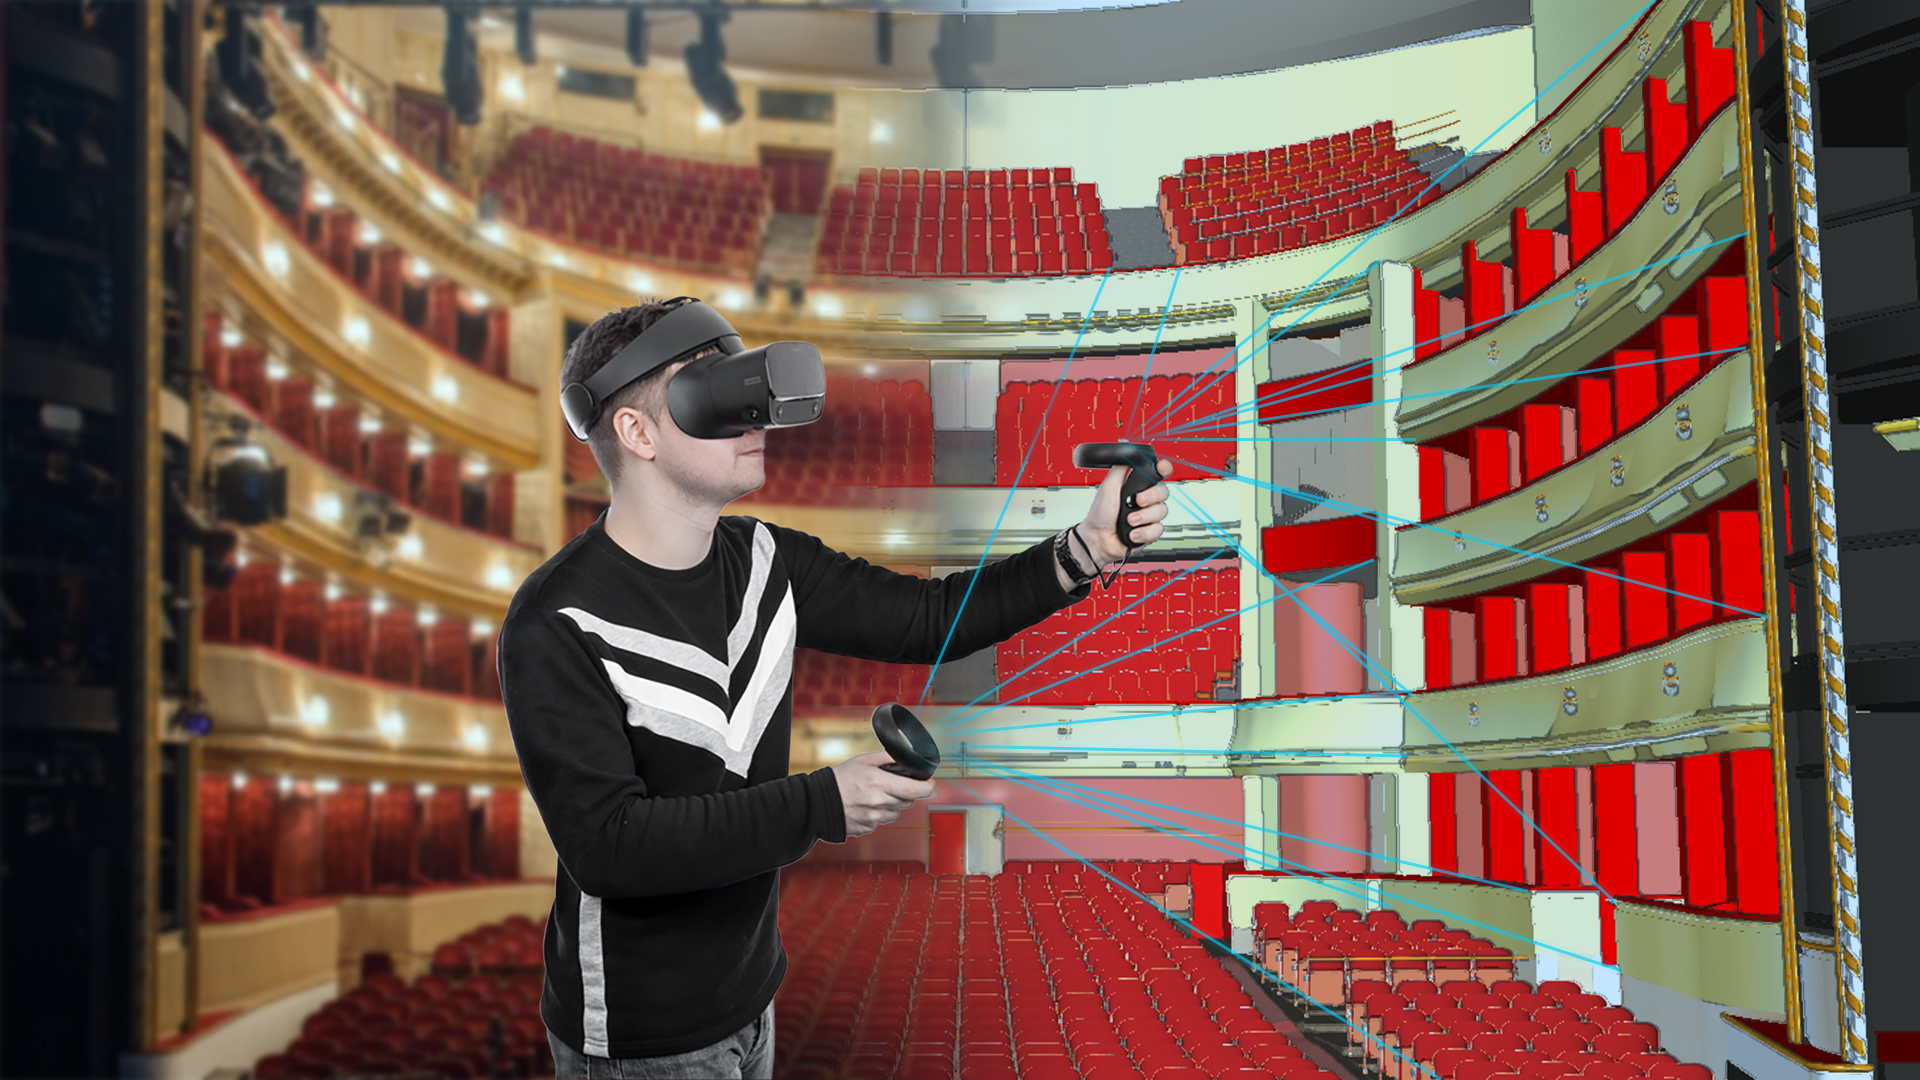 Während eines Praxissemesters am Burgtheater Wien wurde Vincent Kaufmann erstmals auf die Möglichkeiten der Virtual Reality aufmerksam. Er erstellte ein maßstabsgetreues 3D-Modell der Bühne und des Besucherraumes. Foto: Kaufmann